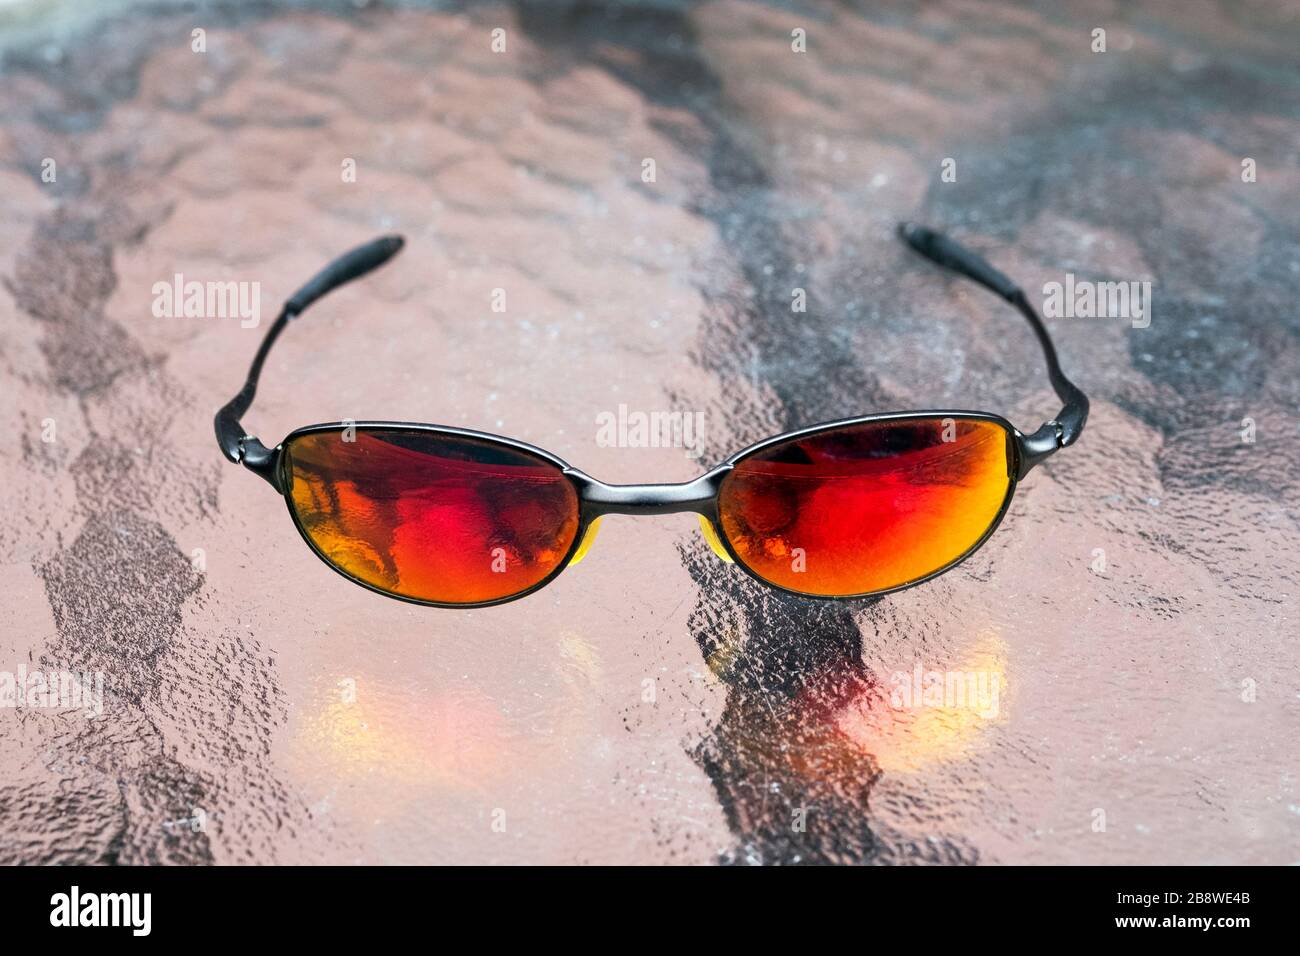 Eine Sonnenbrille mit Oakley E-Draht und roten Linsen Stockfotografie -  Alamy